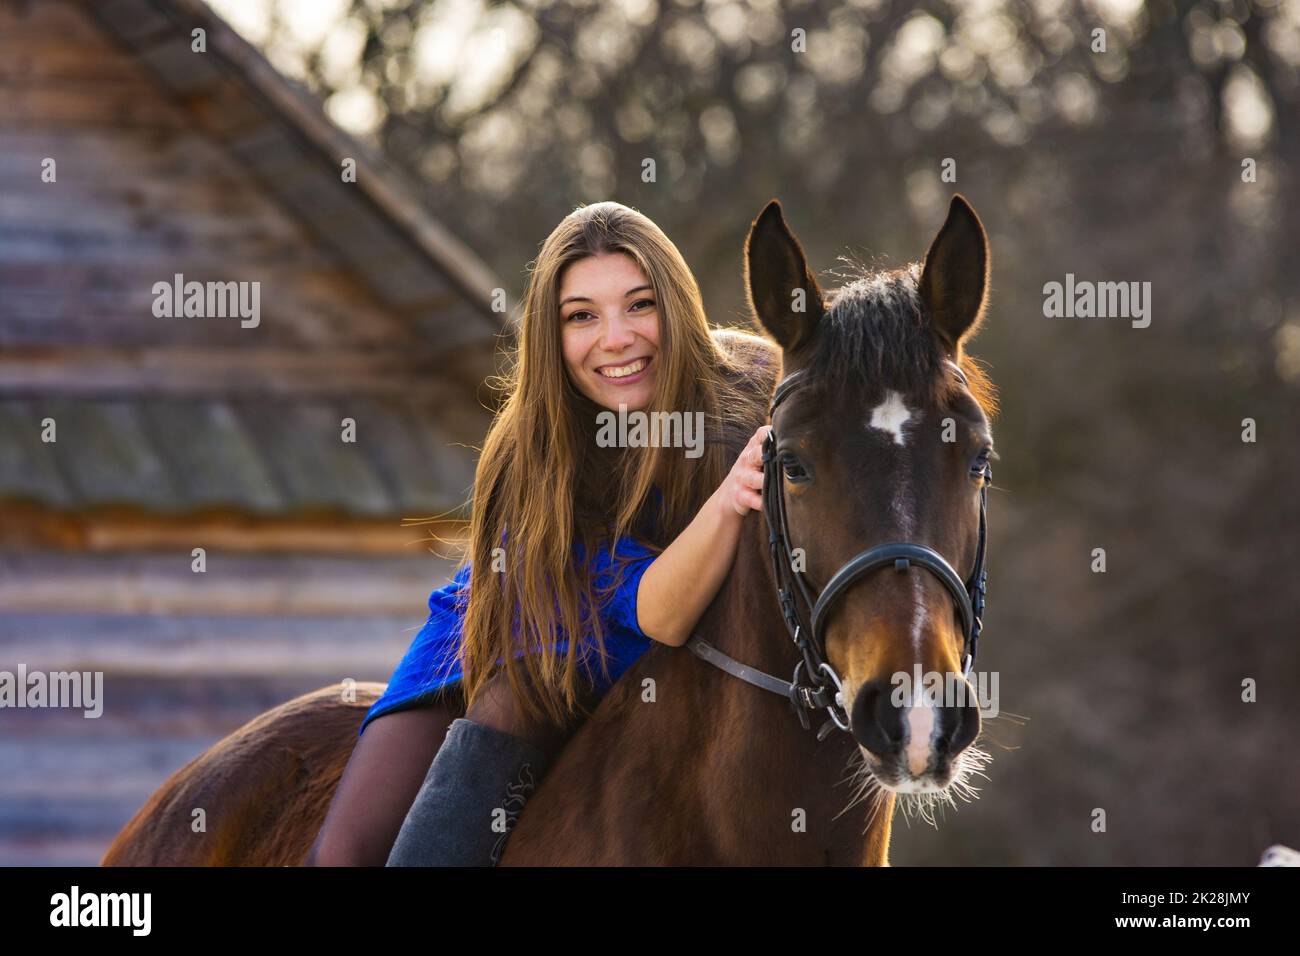 Mädchen in einem blauen Kleid auf einem schönen Pferd Stockfoto